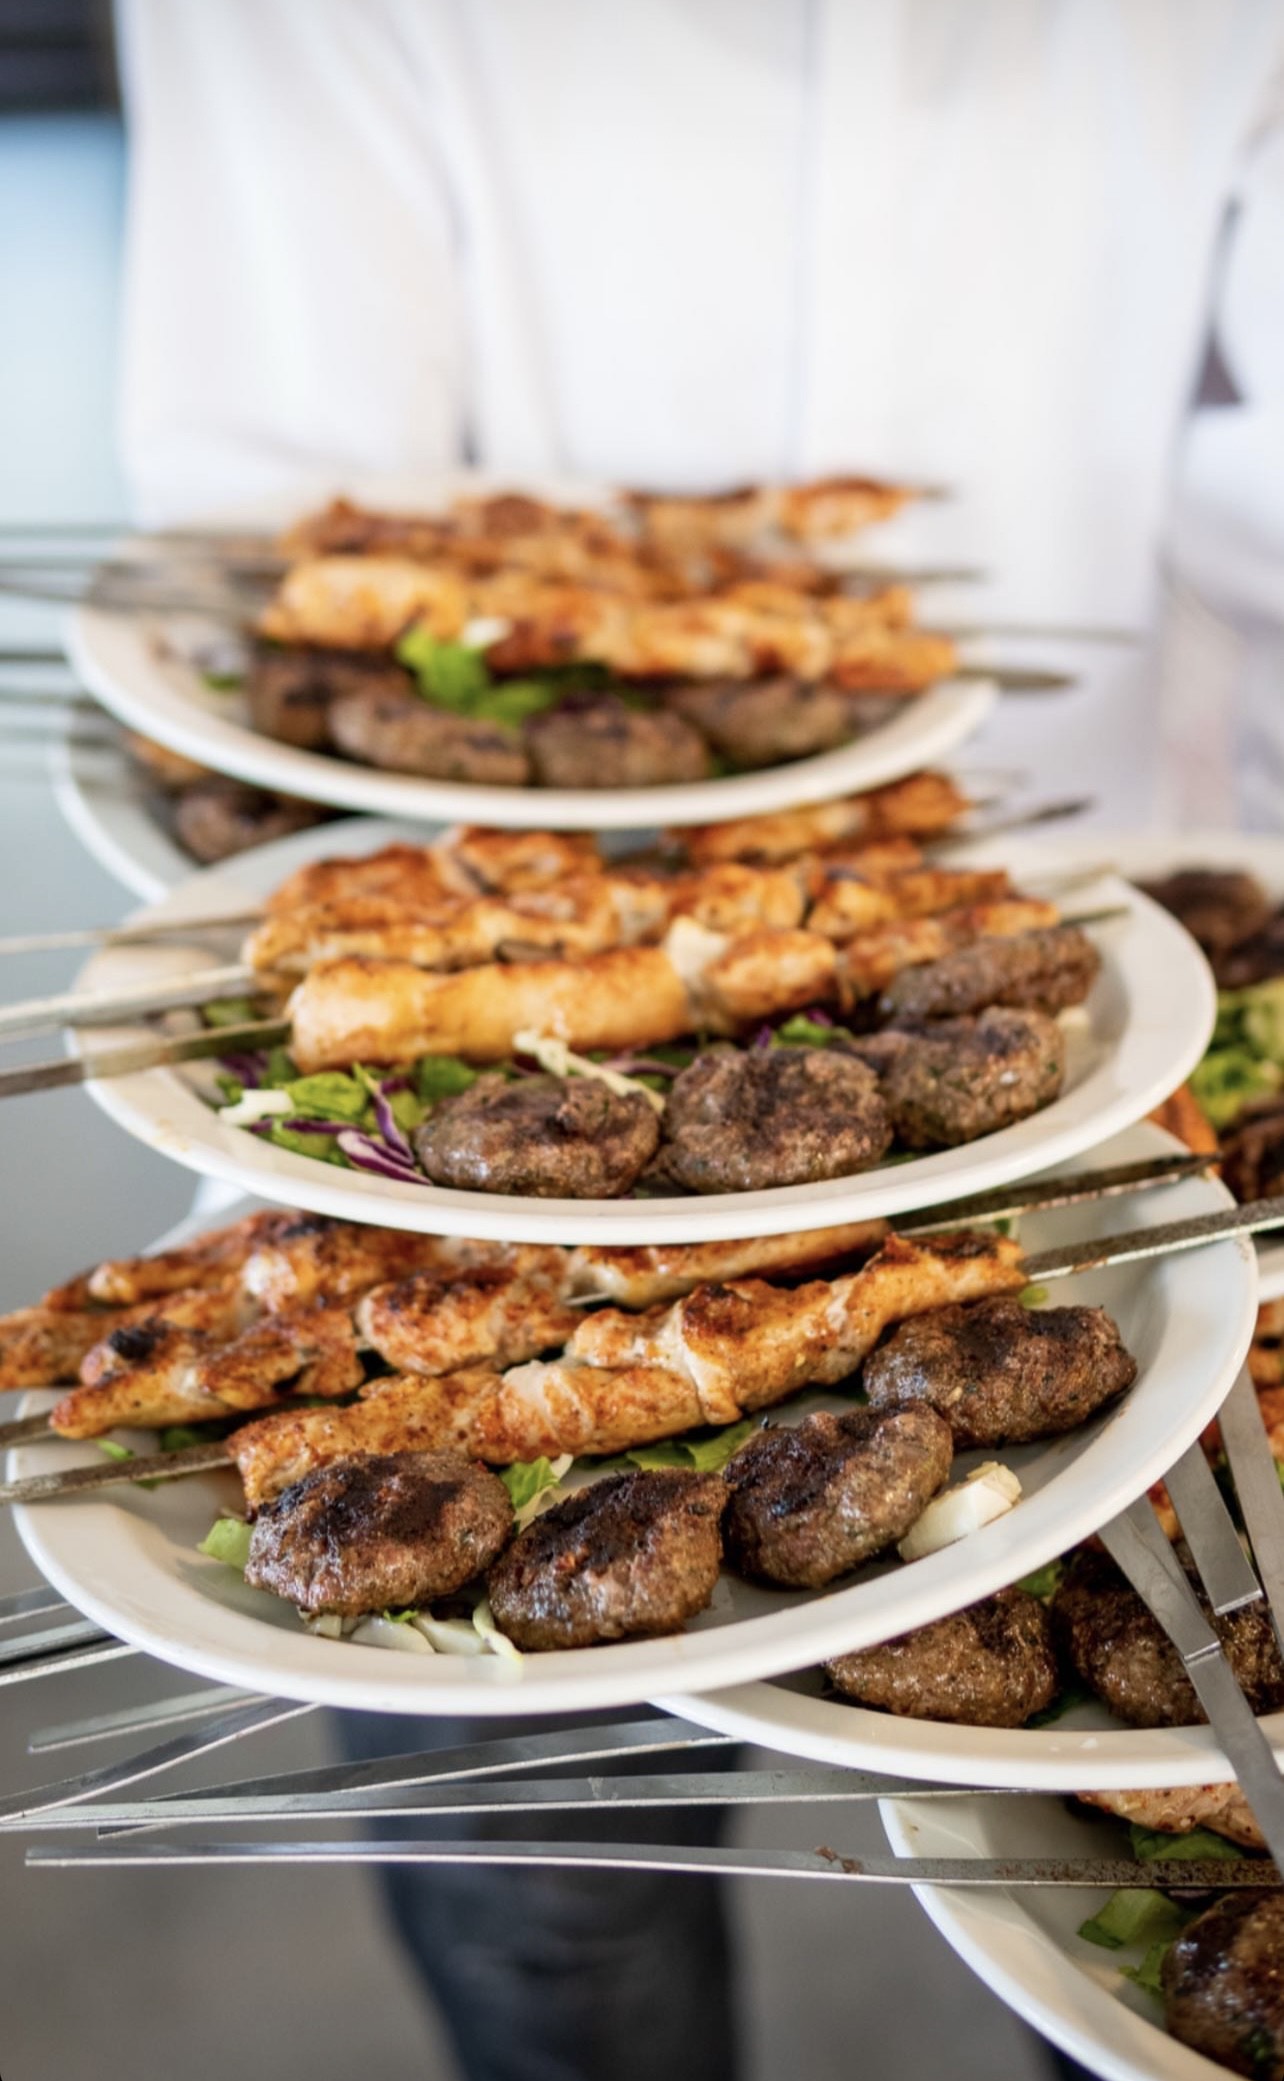 تذوقوا أشهى وجبات الأسماك واللحوم لدى مطعم أبو نصار الأعرق في يافا 